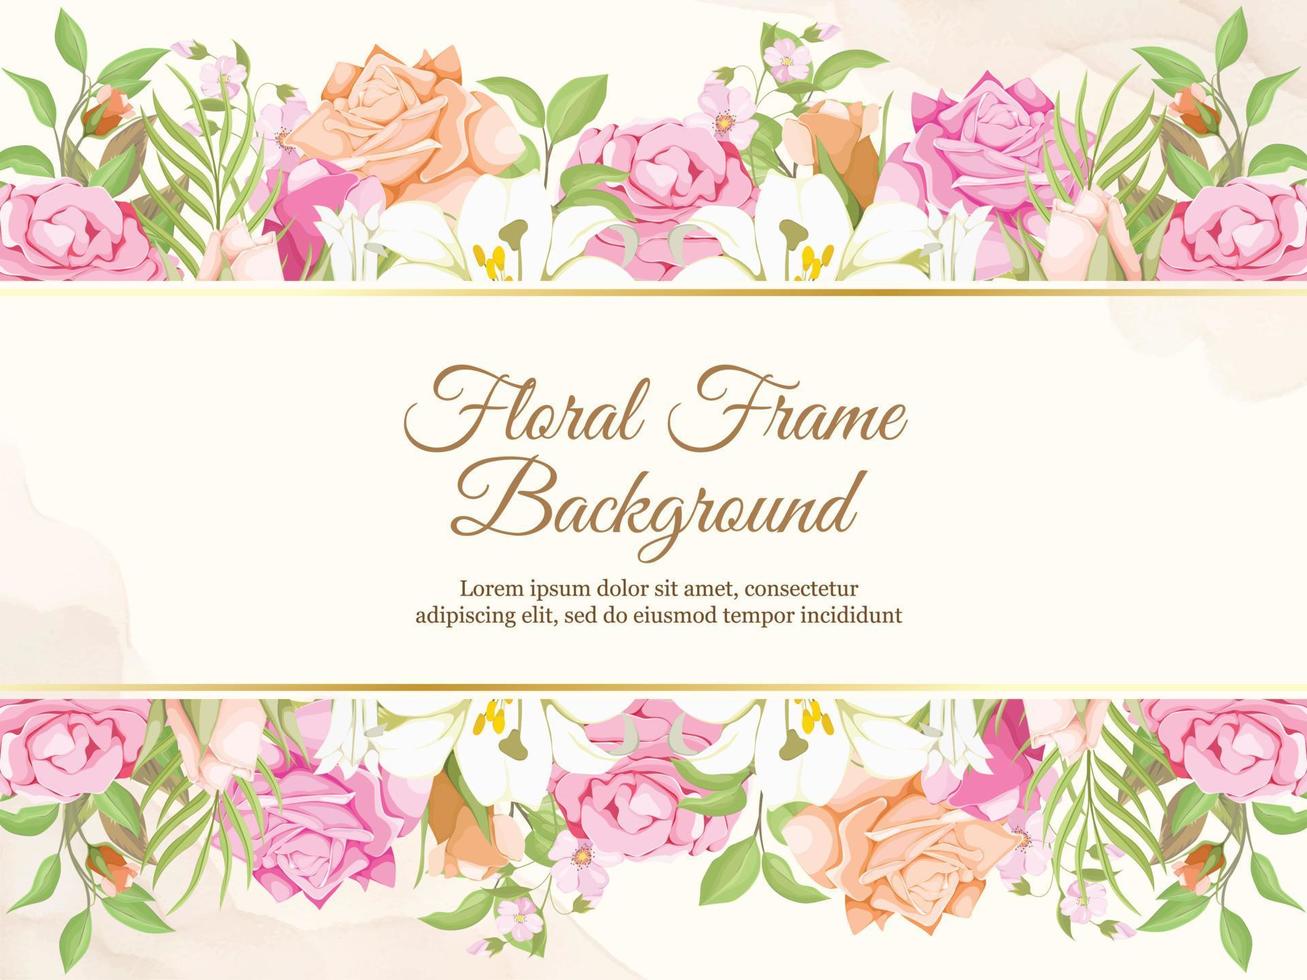 Hochzeitsbanner Hintergrund floral mit Lilien und Rosen Design vektor